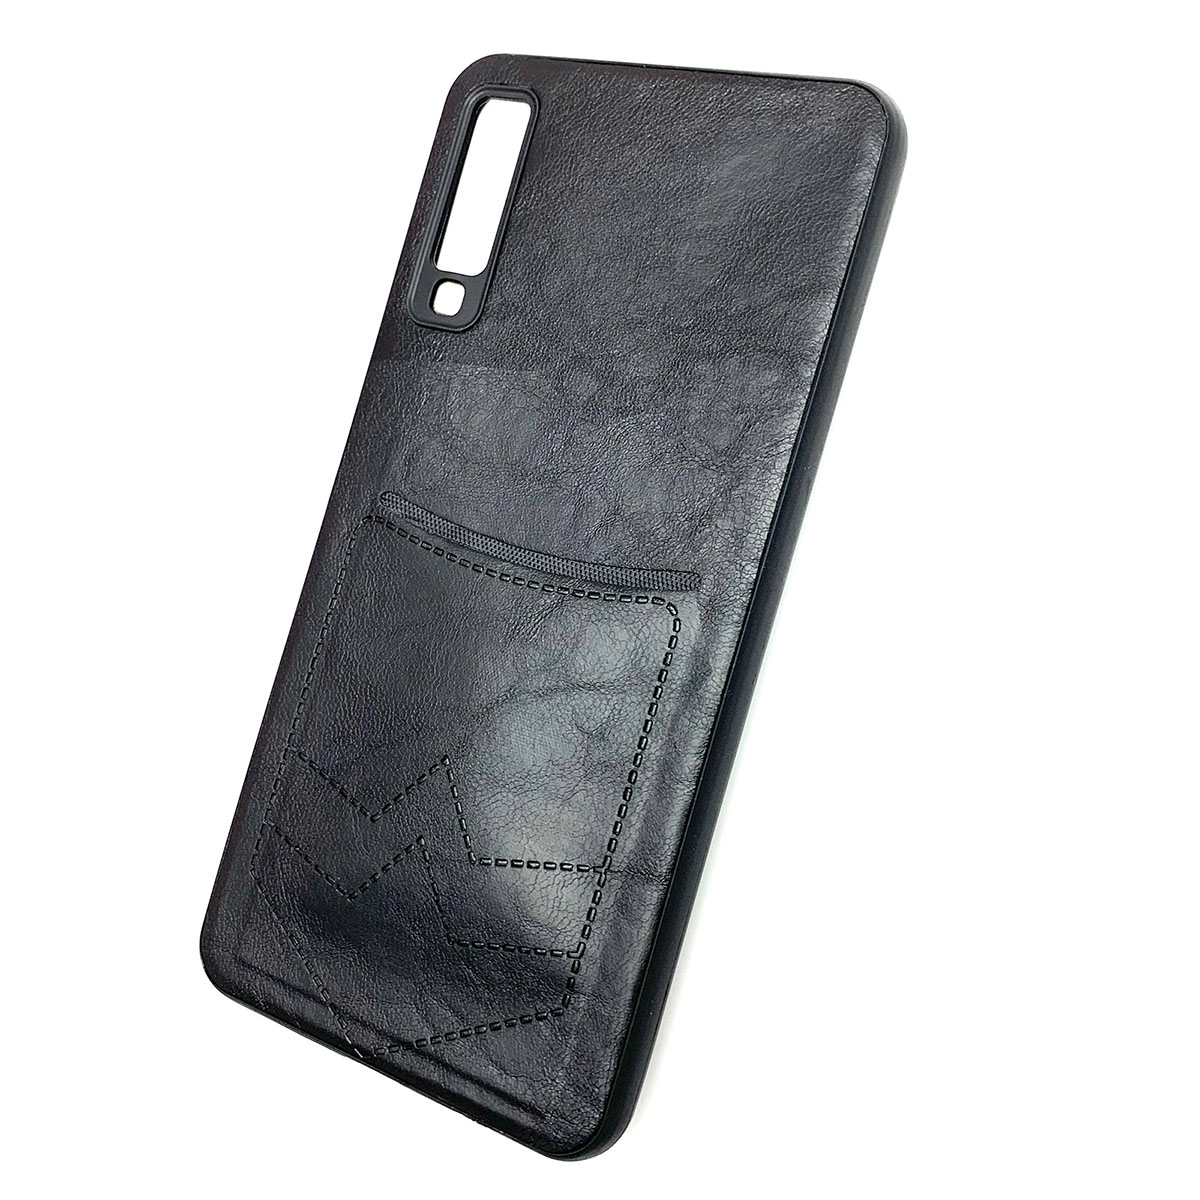 Чехол накладка для SAMSUNG Galaxy A7 2018 (SM-A750), силикон, визитница, цвет черный.